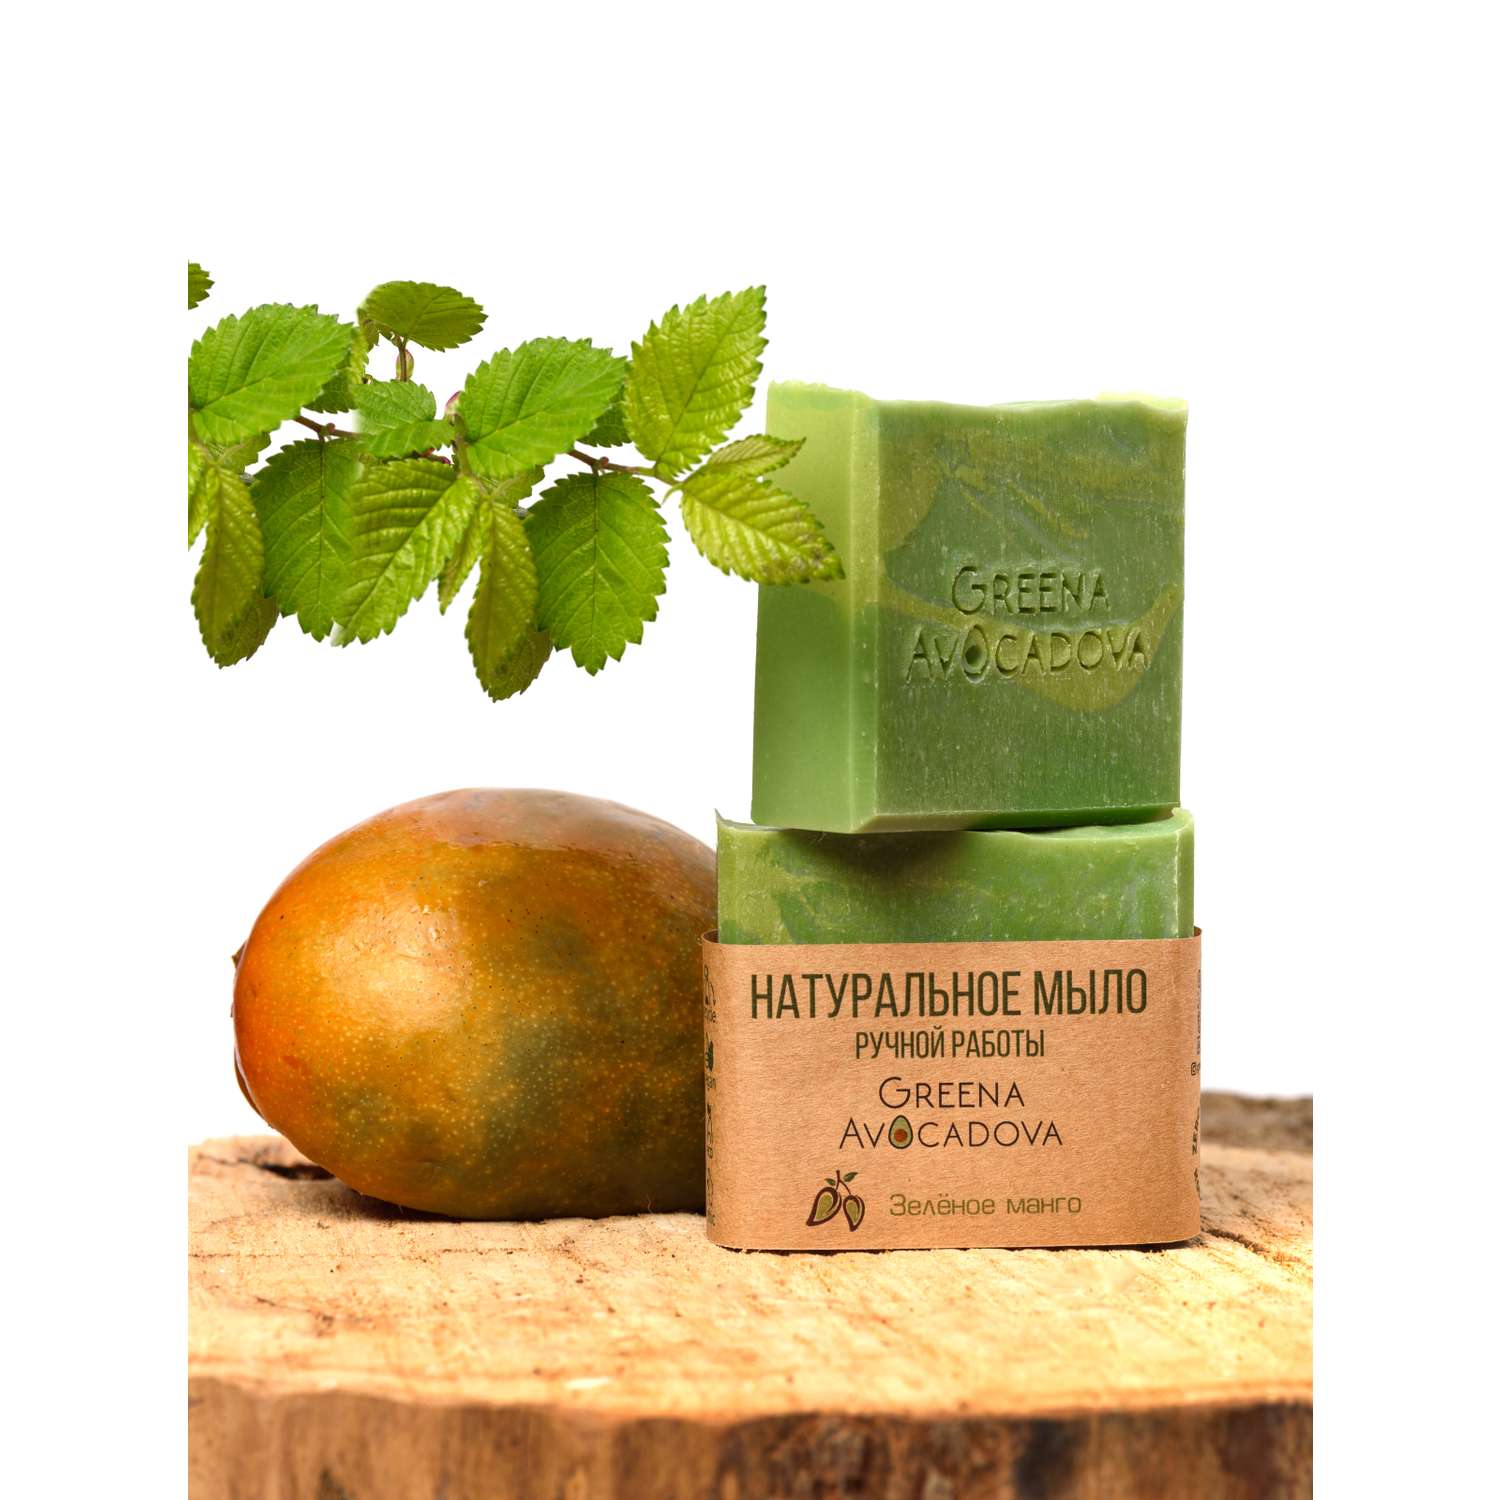 Натуральное мыло ручной работы Greena Avocadova зеленое манго - фото 3